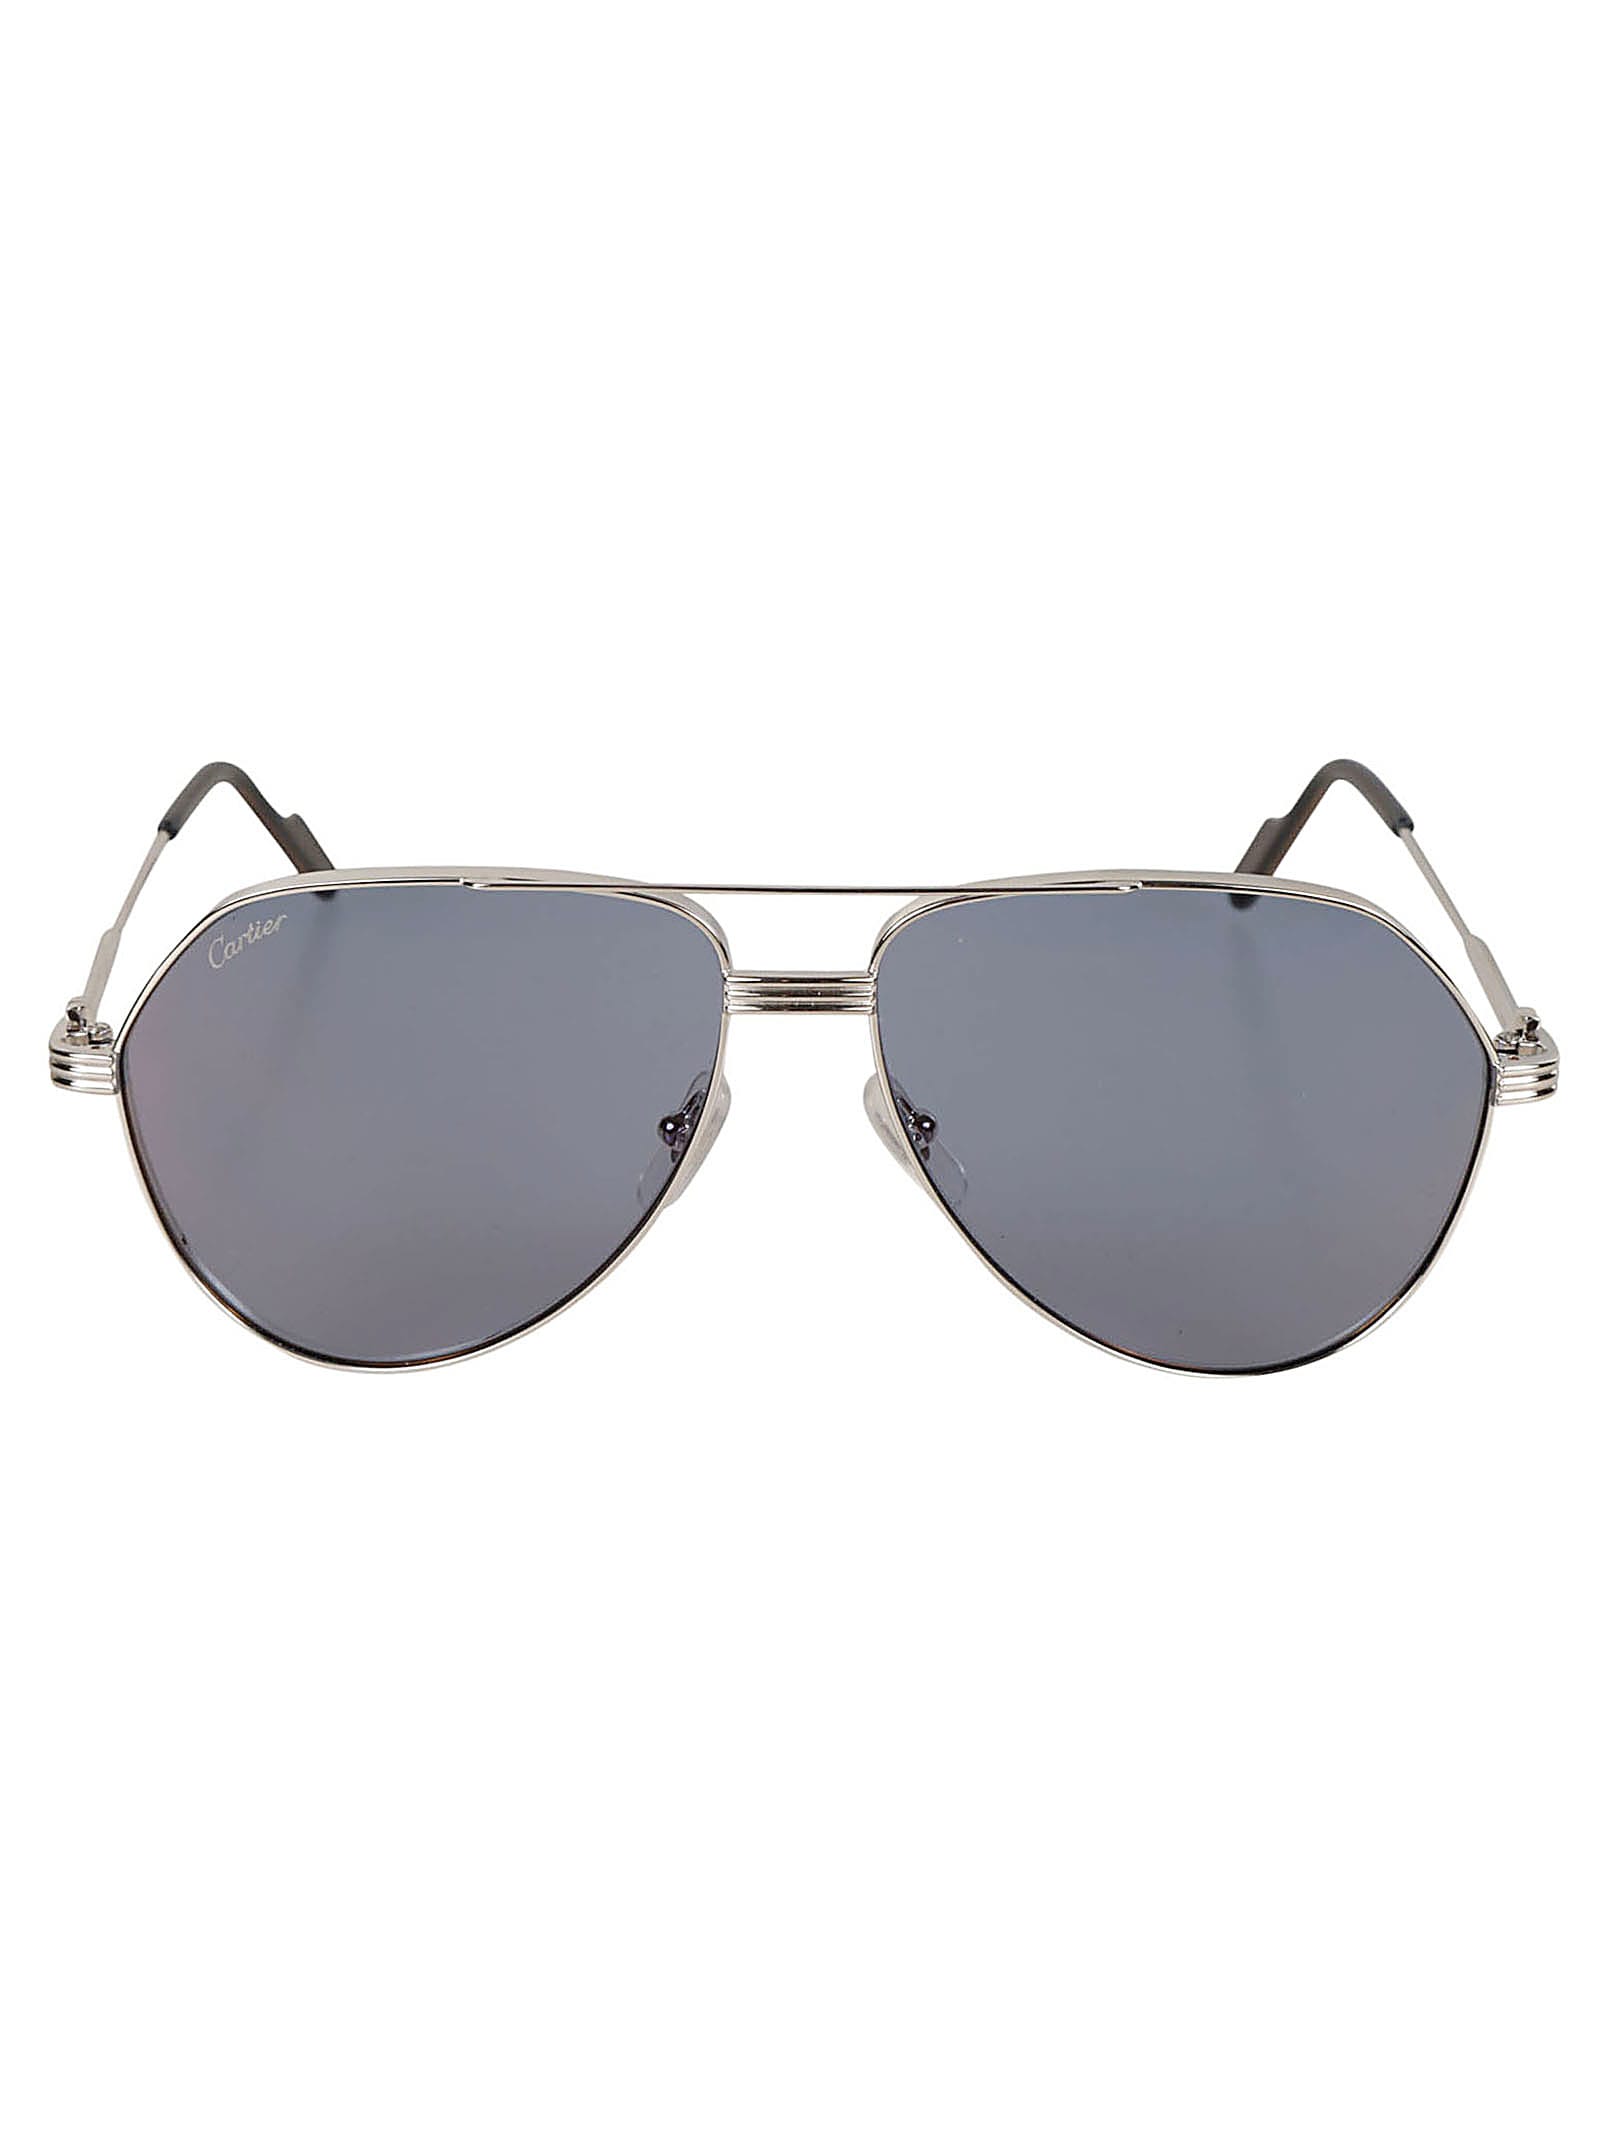 Cartier Aviator Classic Sunglasses Sunglasses In Silver